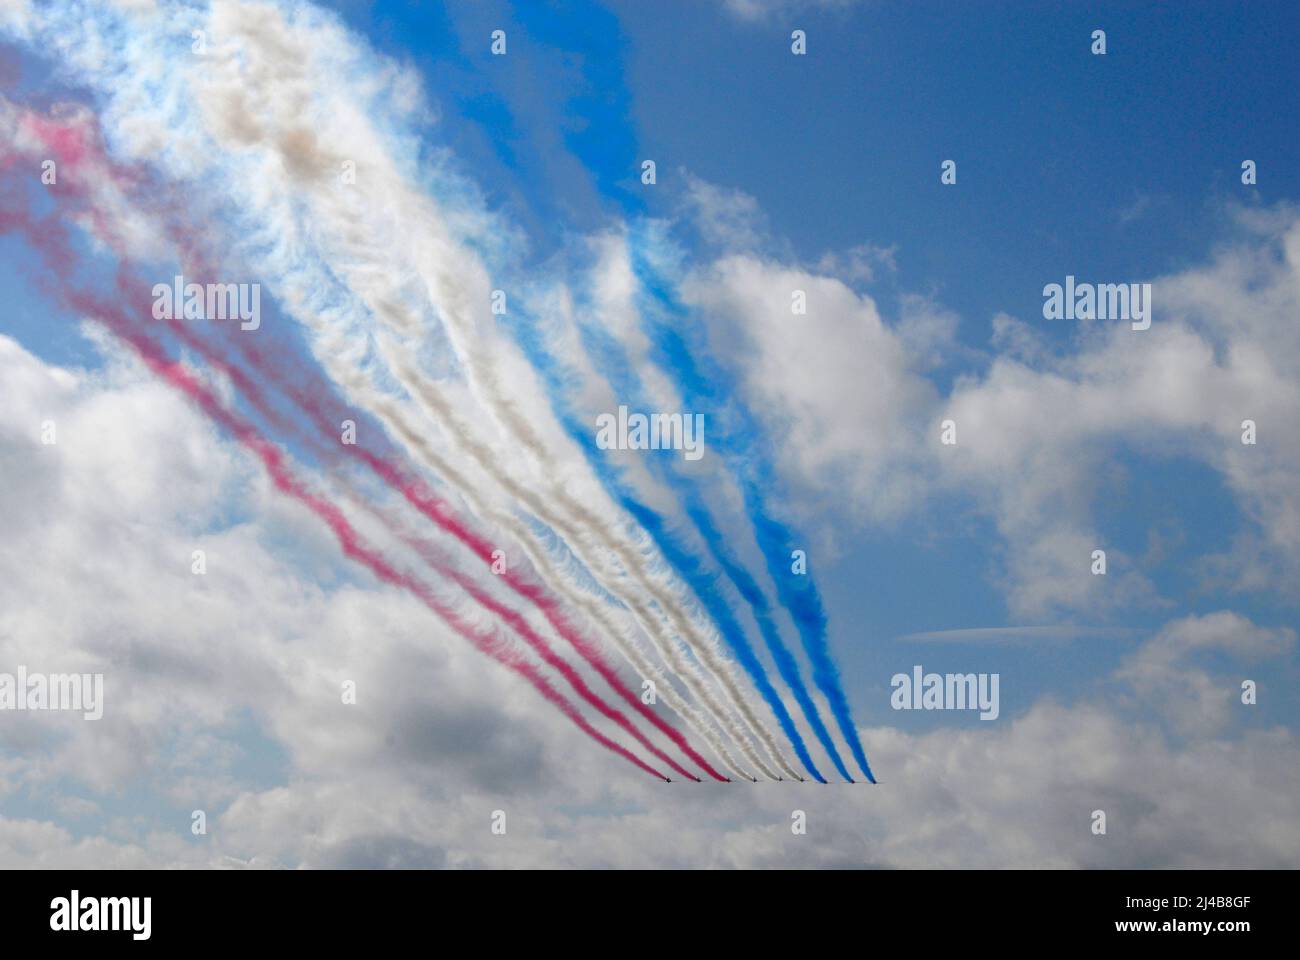 La squadra aerobatica RAF Red Arrows vola in lontananza lasciando dietro di loro sentieri di fumo rosso, bianco e blu Foto Stock